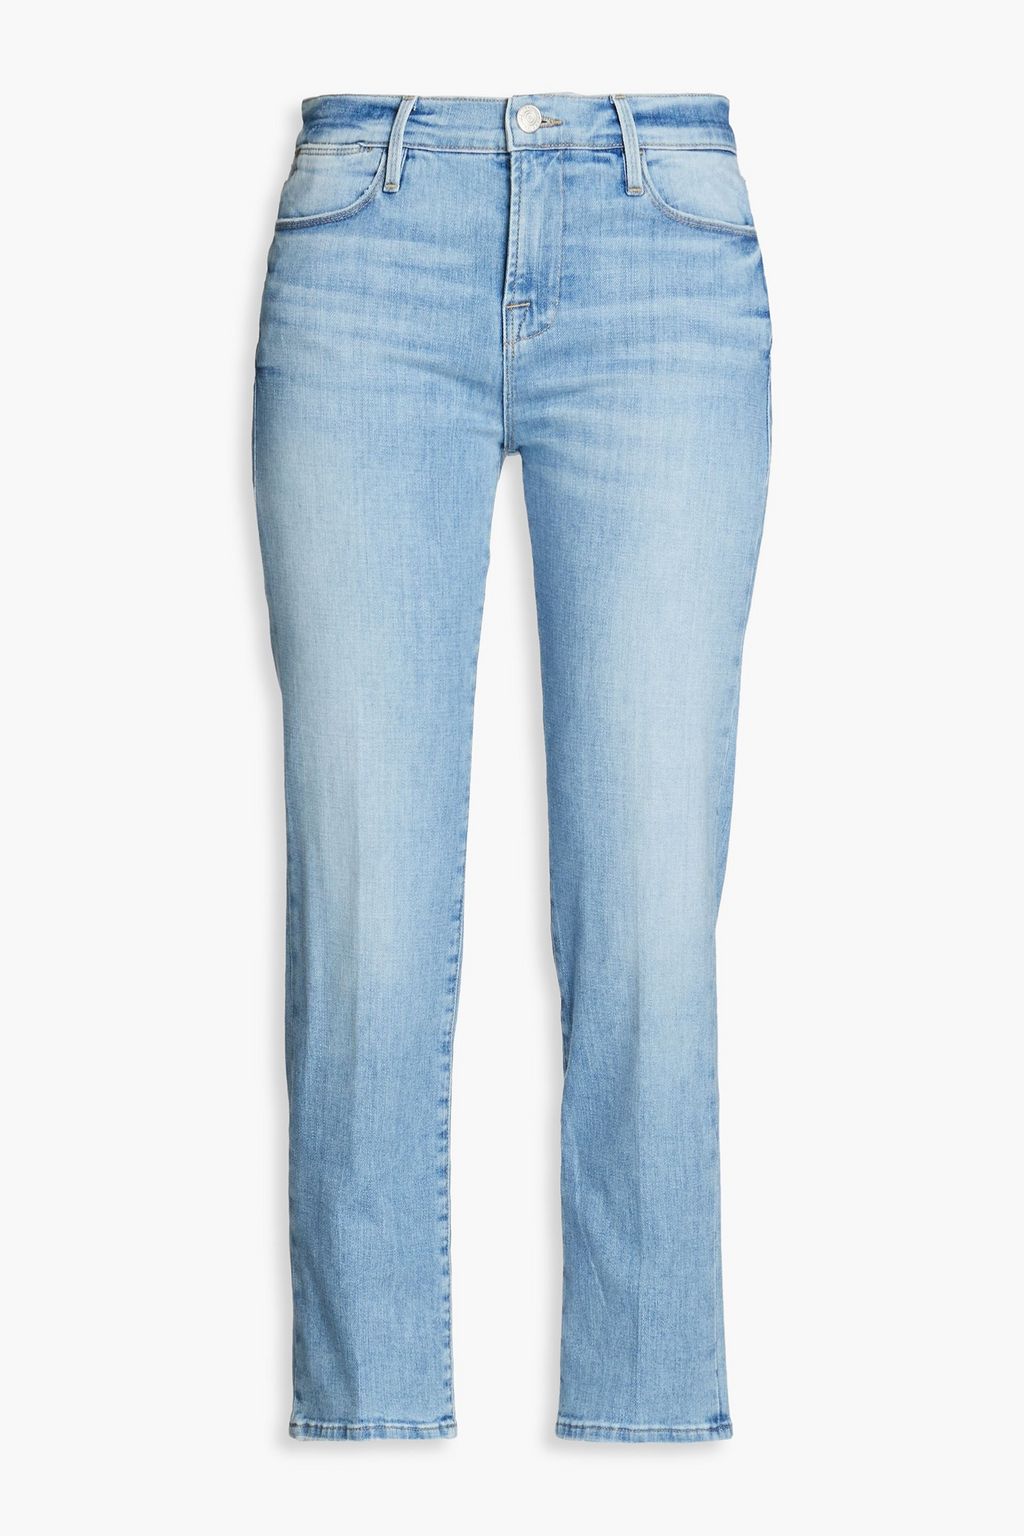 Укороченные прямые джинсы Le High с высокой посадкой FRAME, синий джинсы укороченные широкие frame le palazzo с высокой посадкой kerry